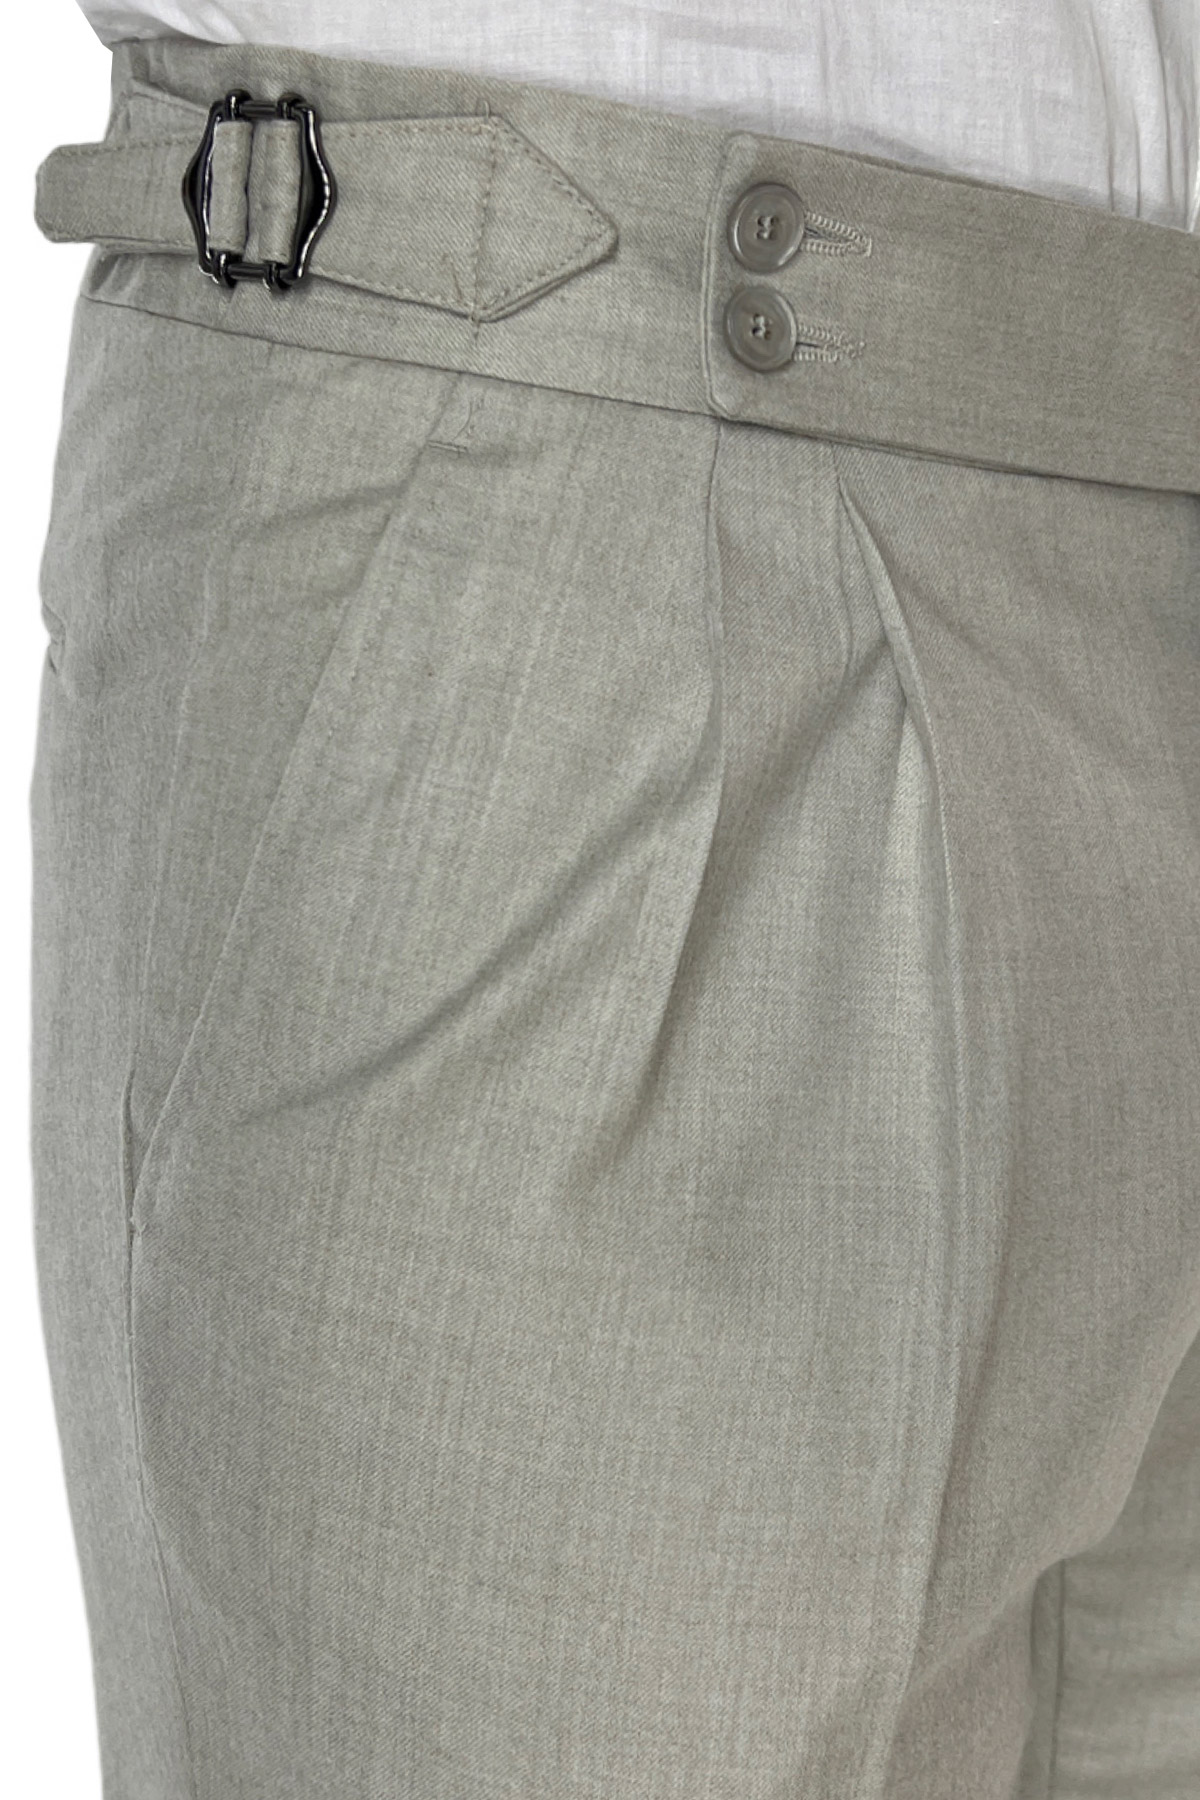 Pantalone uomo beige vita alta tasca america in lana flanella con pinces e fibbie laterali Vitale Barberis Canonico